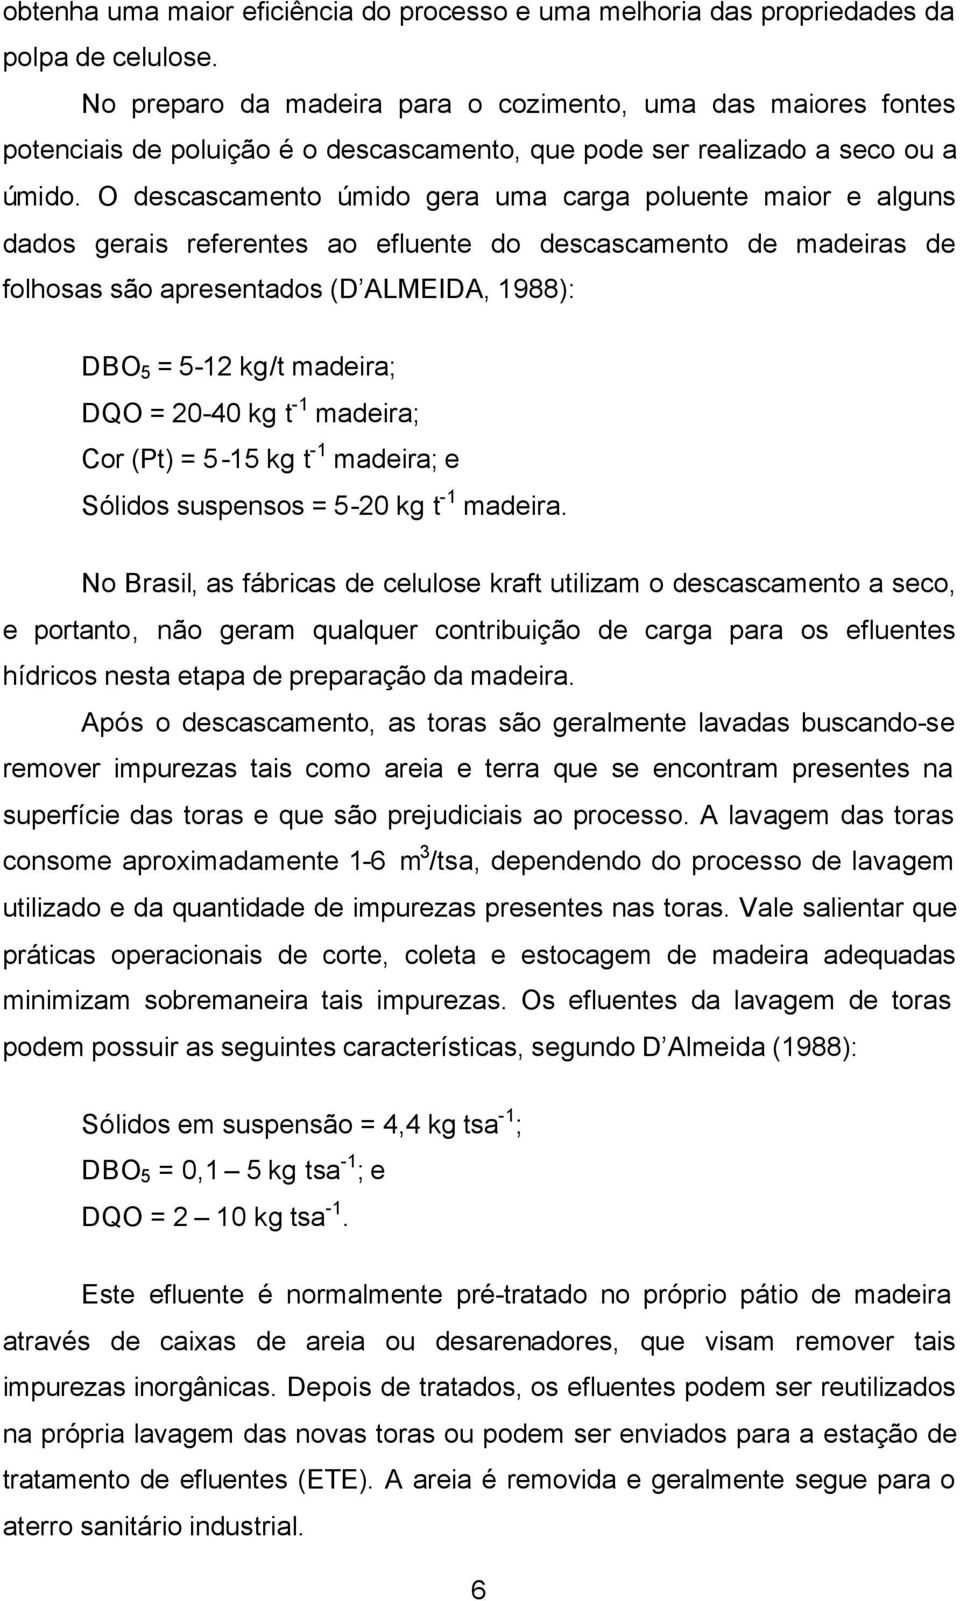 O descascamento úmido gera uma carga poluente maior e alguns dados gerais referentes ao efluente do descascamento de madeiras de folhosas são apresentados (D ALMEIDA, 1988): DBO 5 = 5-12 kg/t